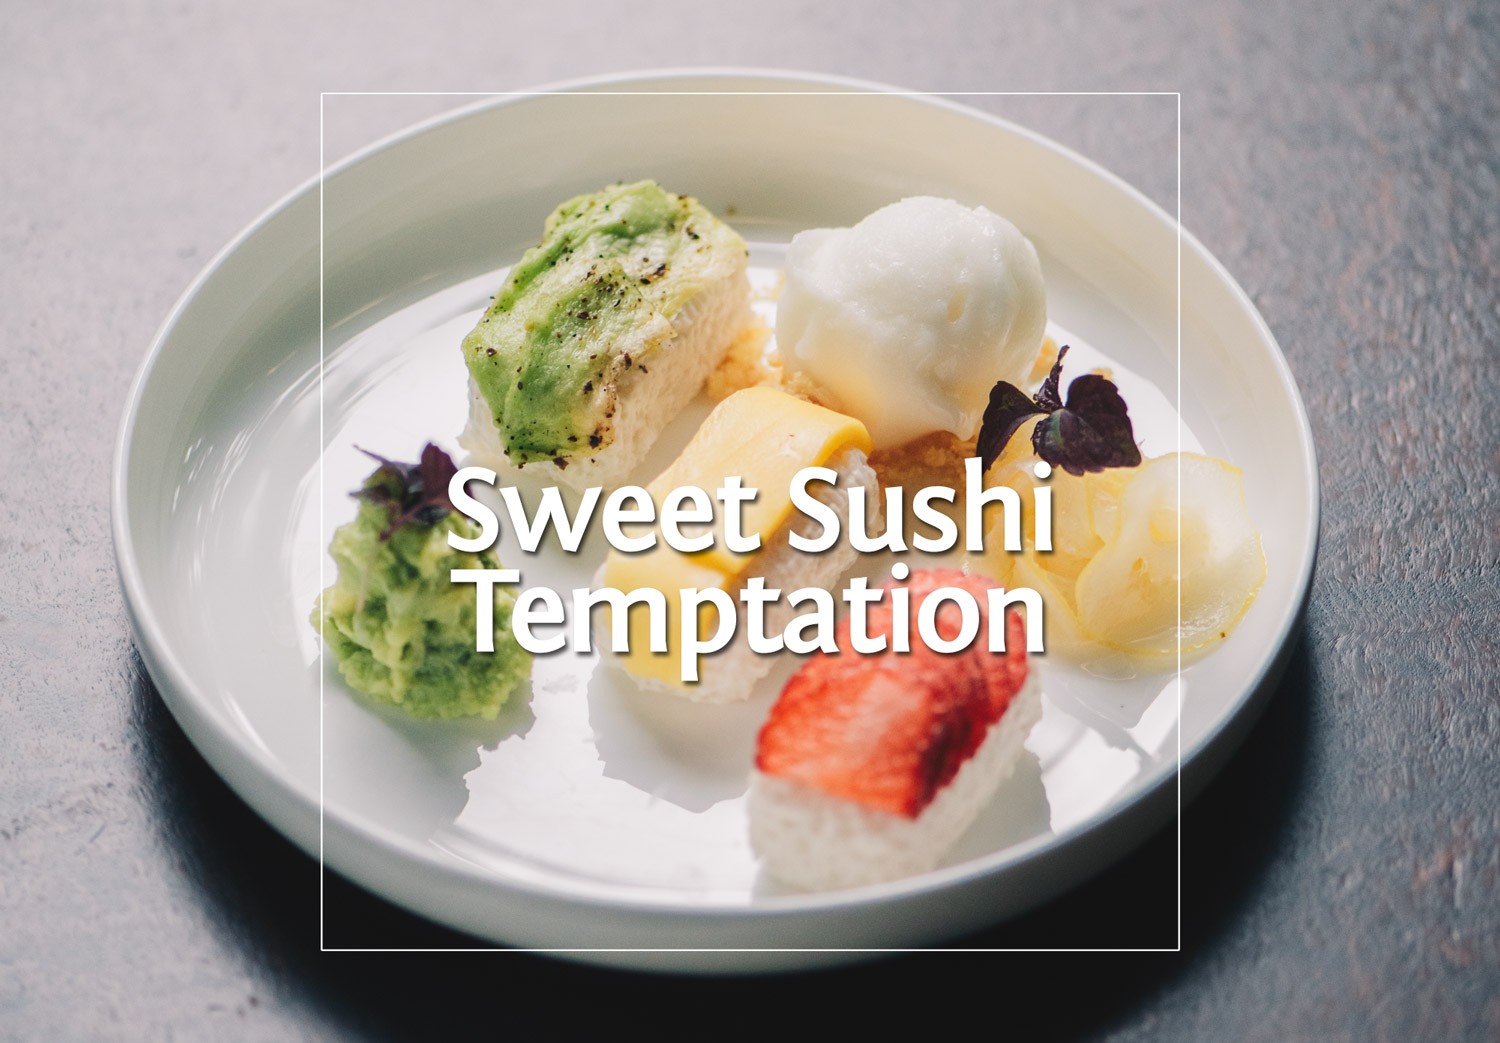 Sweet Sushi Temptation